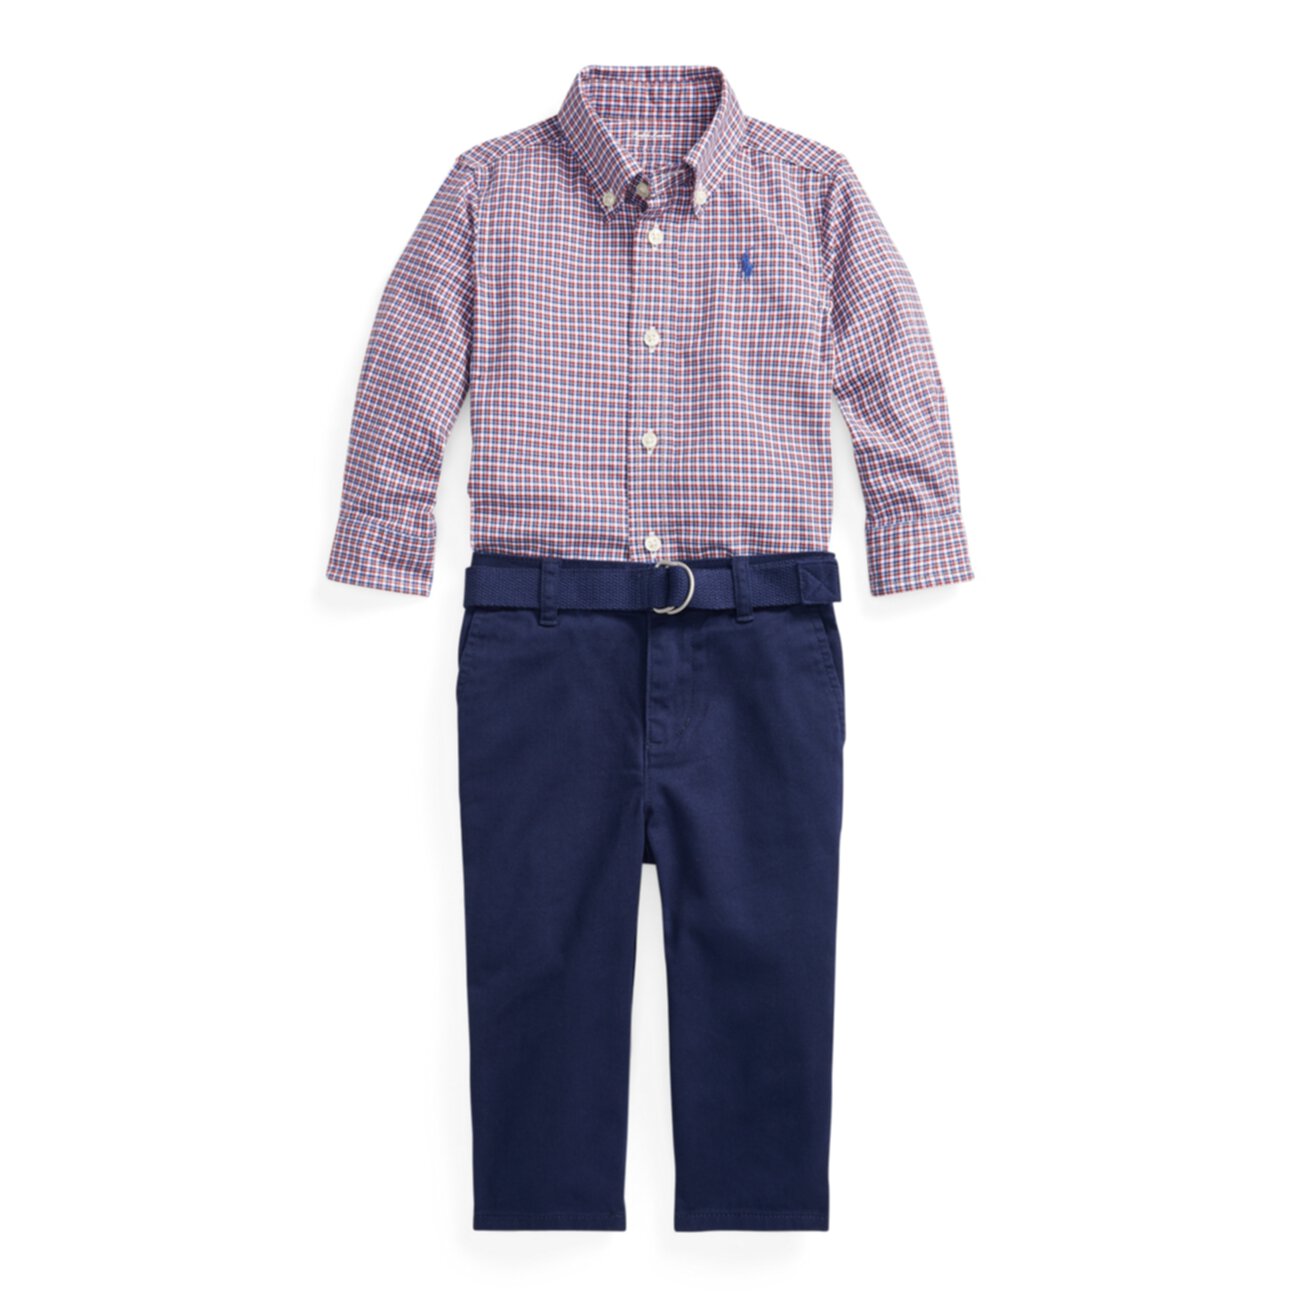 Комплект рубашки, пояса и брюк Ralph Lauren